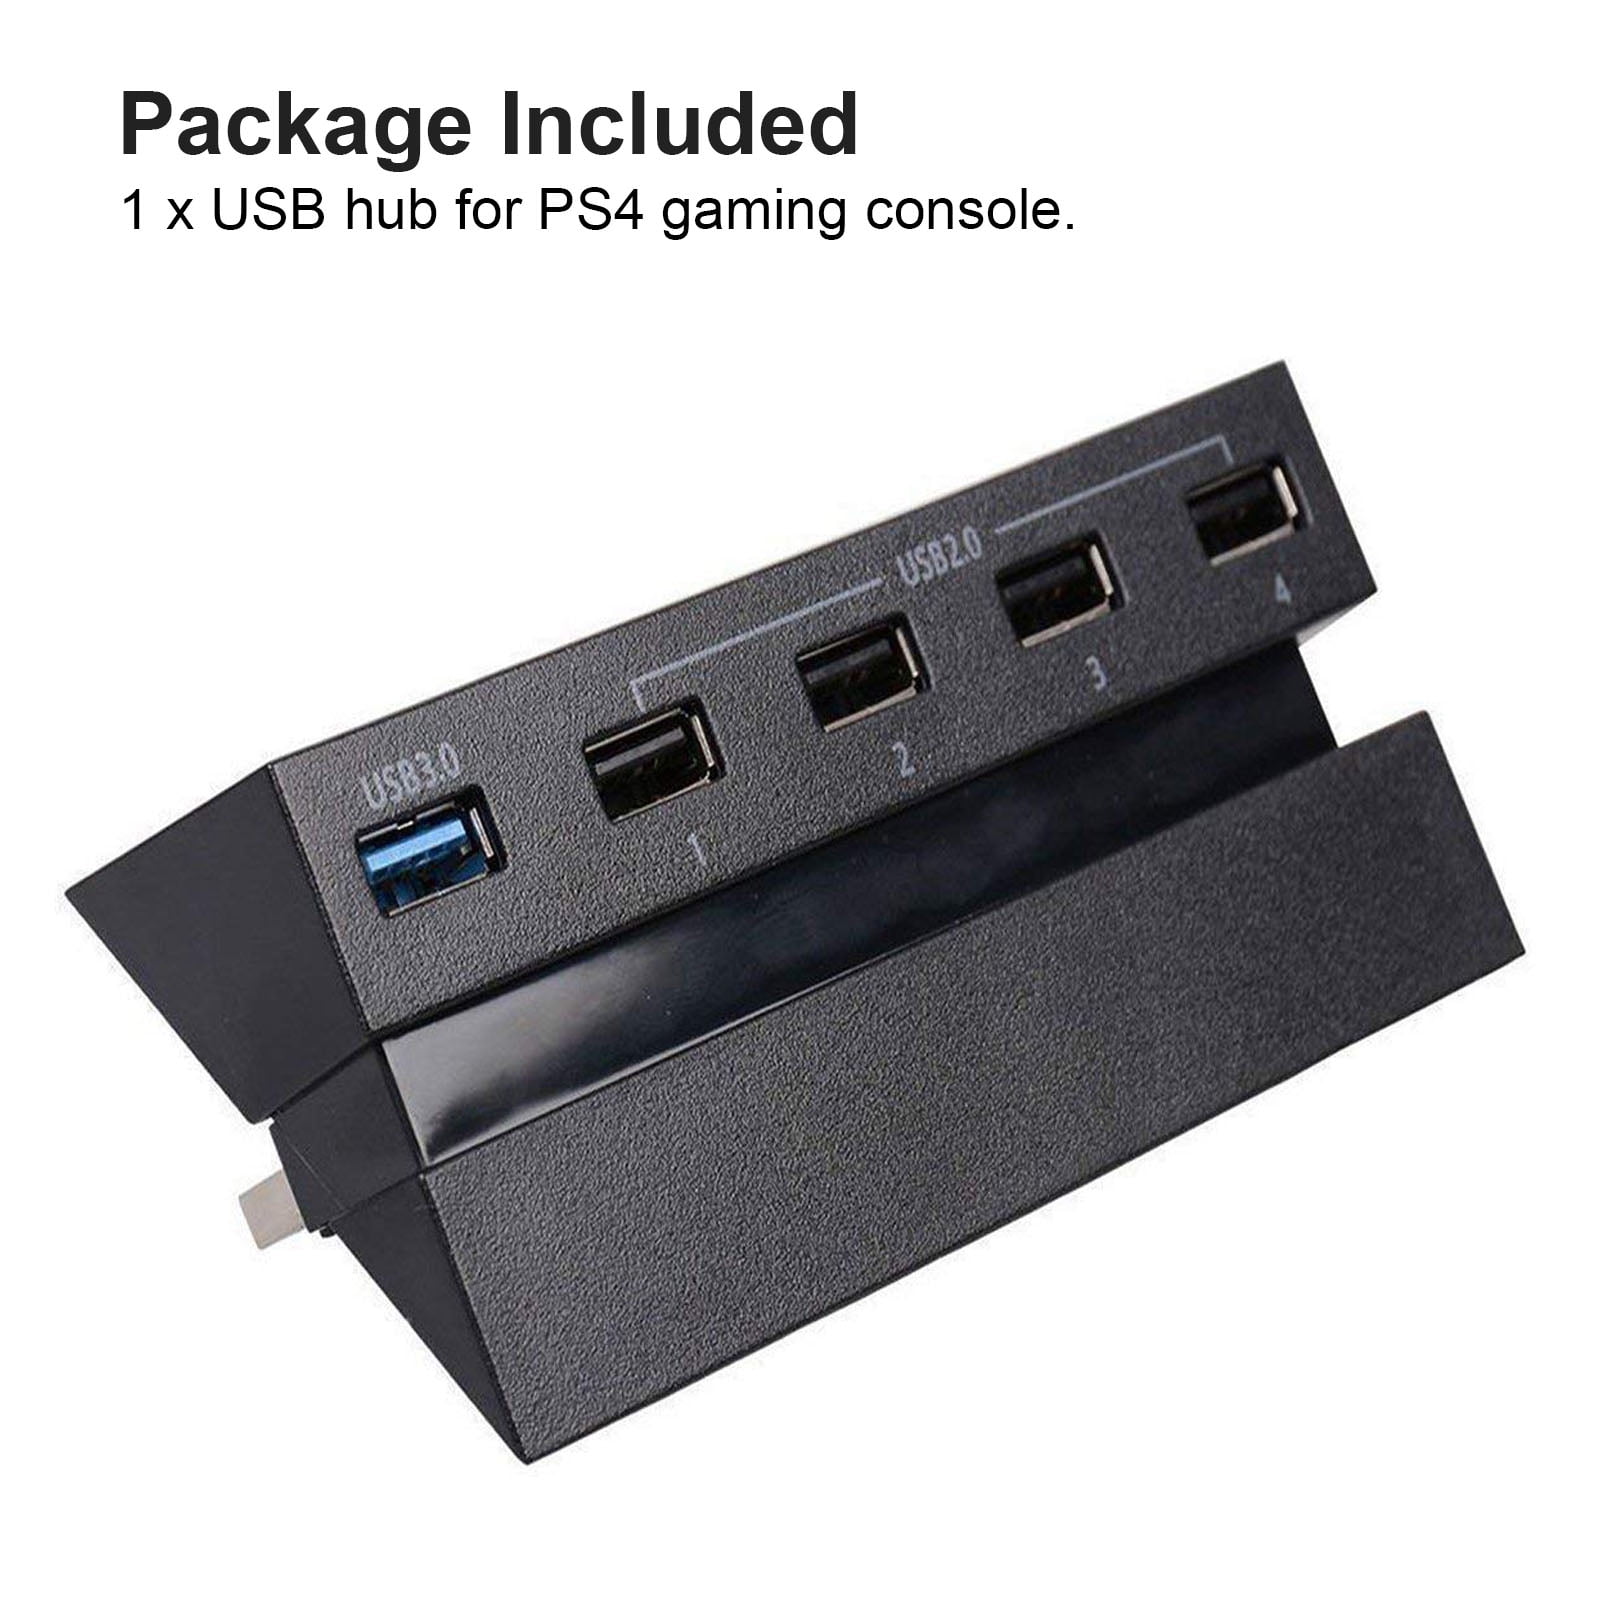 inden længe frihed emulering 5 Port USB Hub Fit for PlayStation 4 PS4 Console, EEEkit USB 3.0/2.0  Charger Controller Splitter Expansion Adapter(Not for PS4 Slim, PS4 PRO) -  Walmart.com